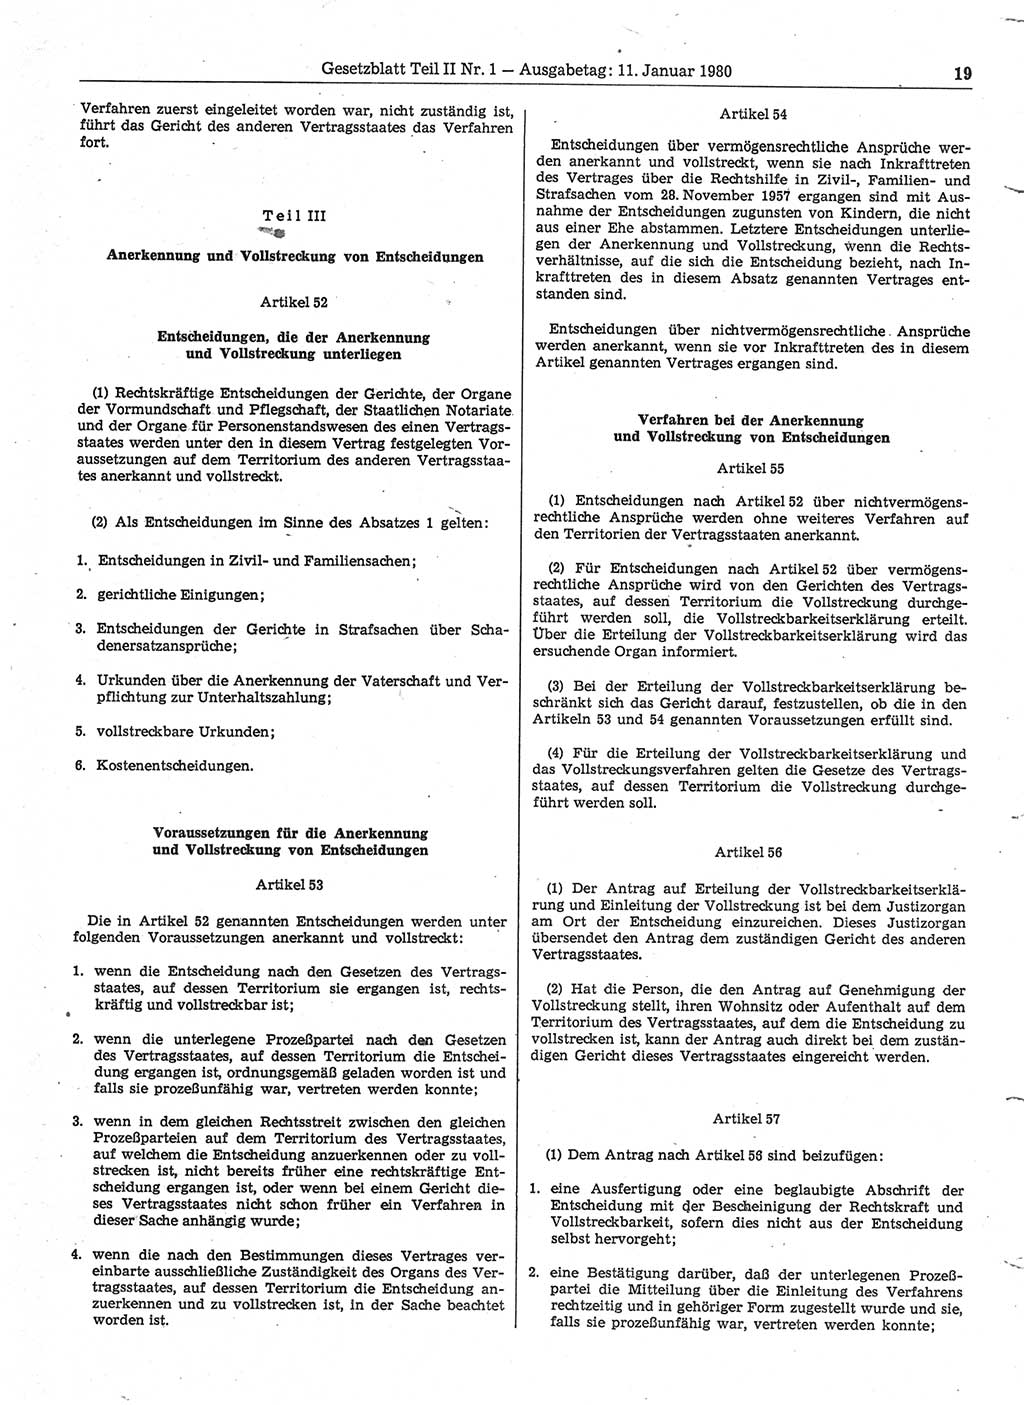 Gesetzblatt (GBl.) der Deutschen Demokratischen Republik (DDR) Teil ⅠⅠ 1980, Seite 19 (GBl. DDR ⅠⅠ 1980, S. 19)